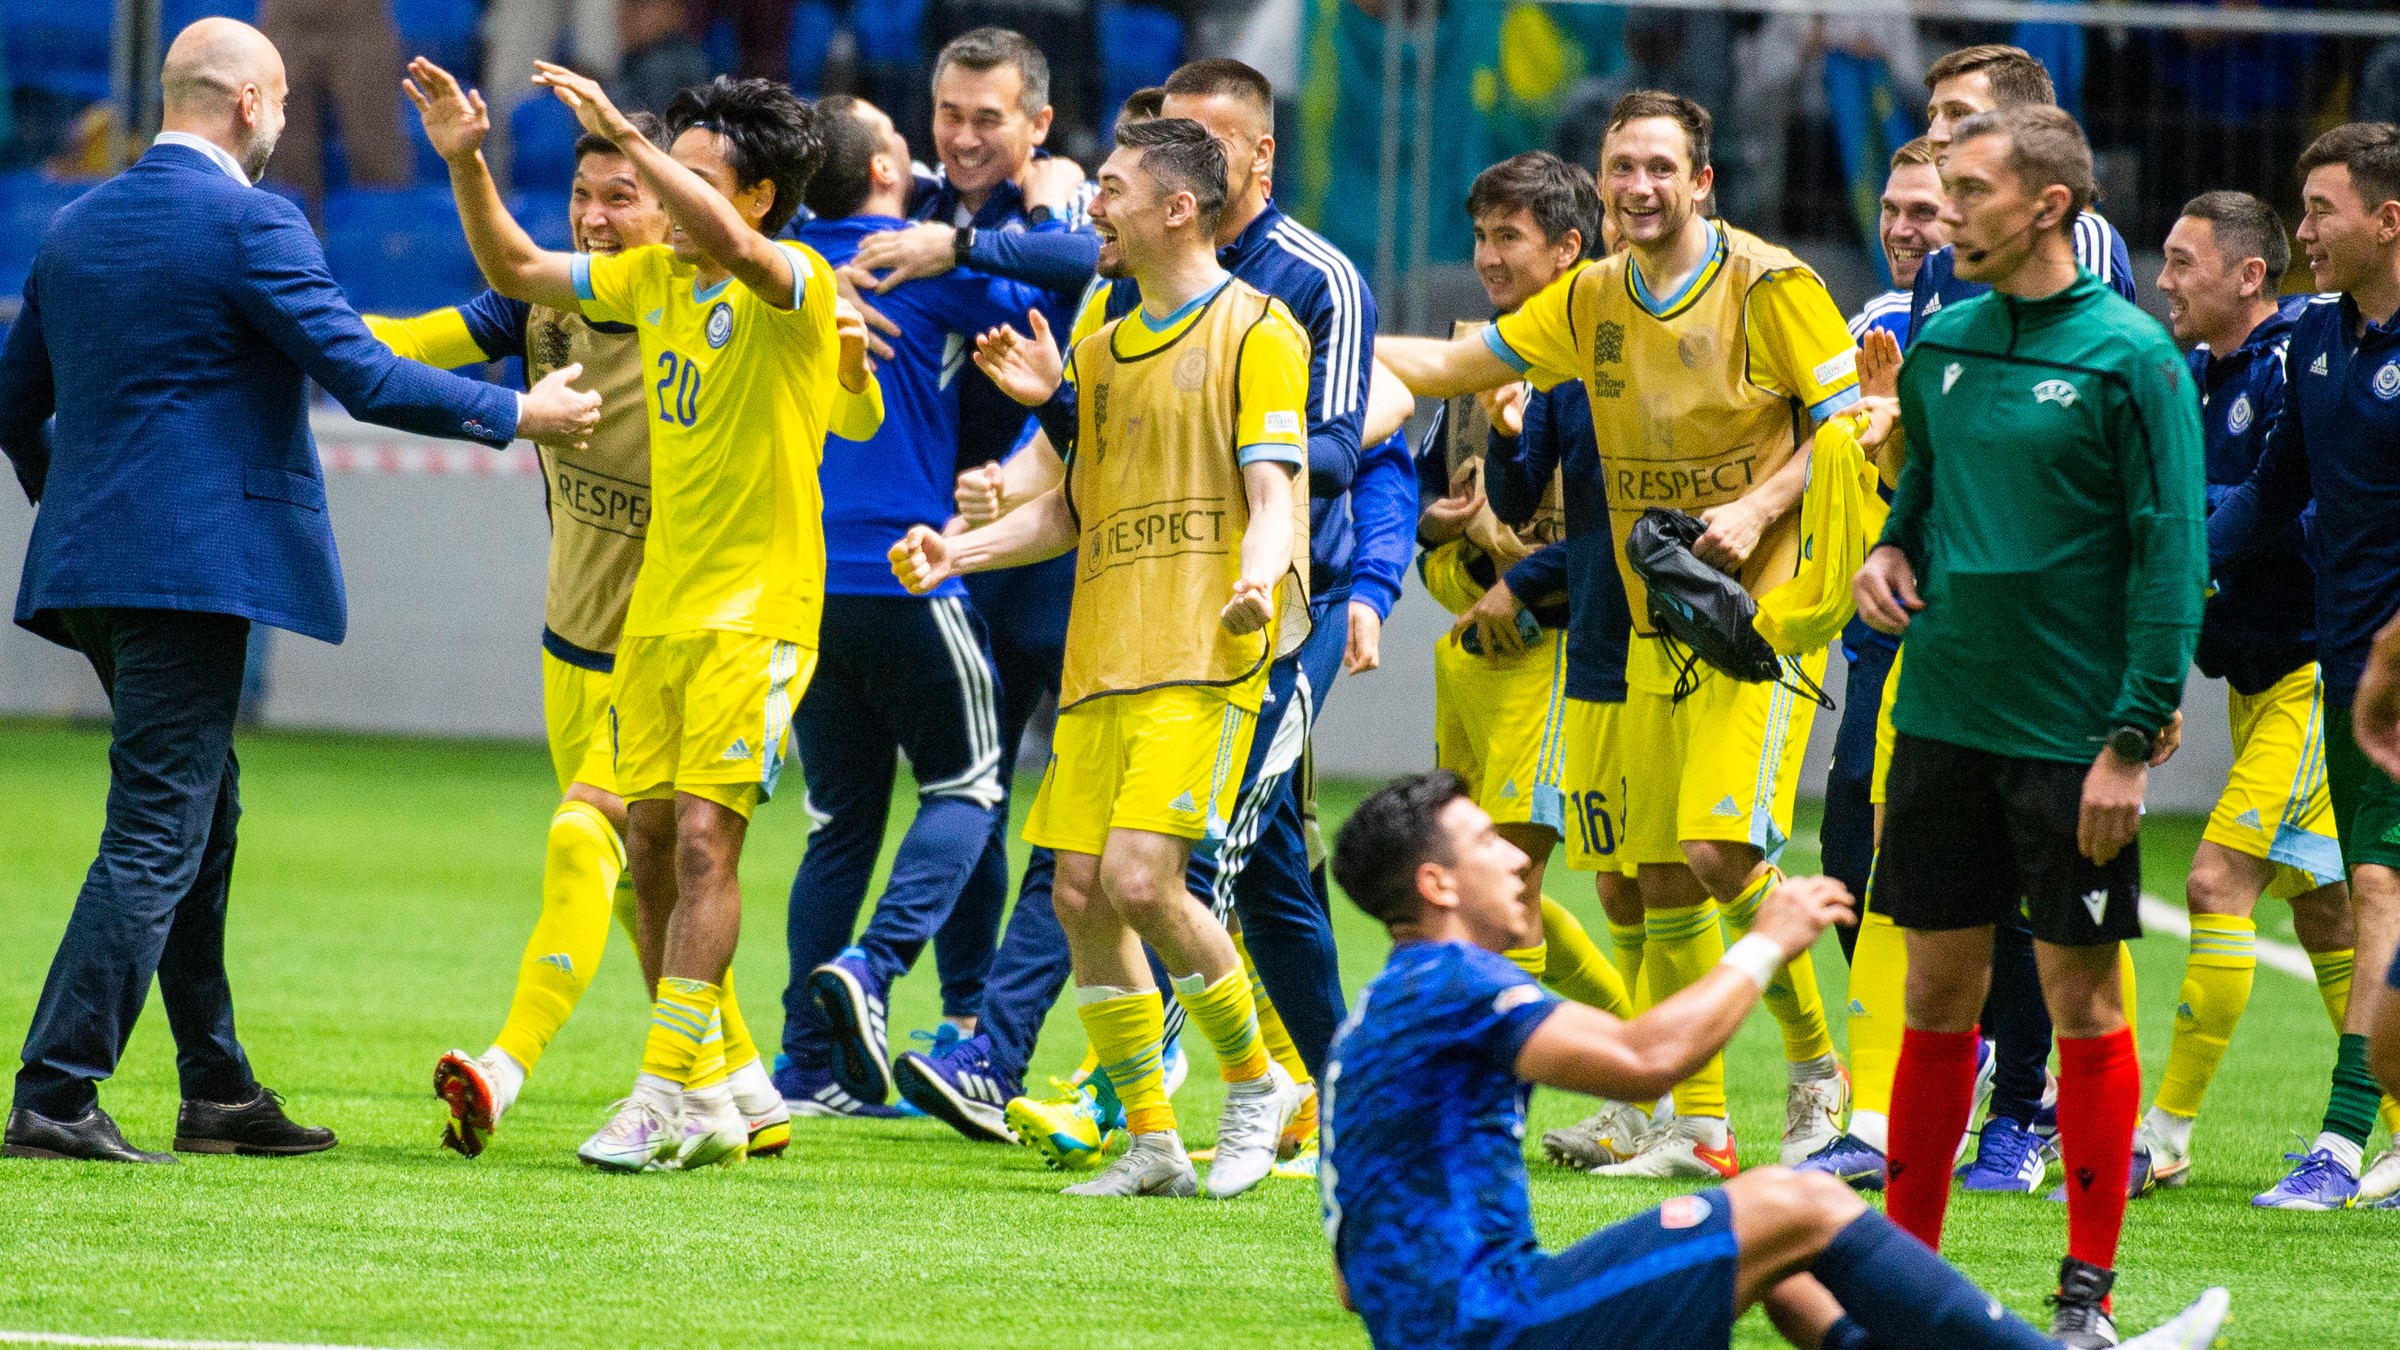 Slovenskí futbalisti si v Lige národov výrazne skomplikovali šancu na postup.